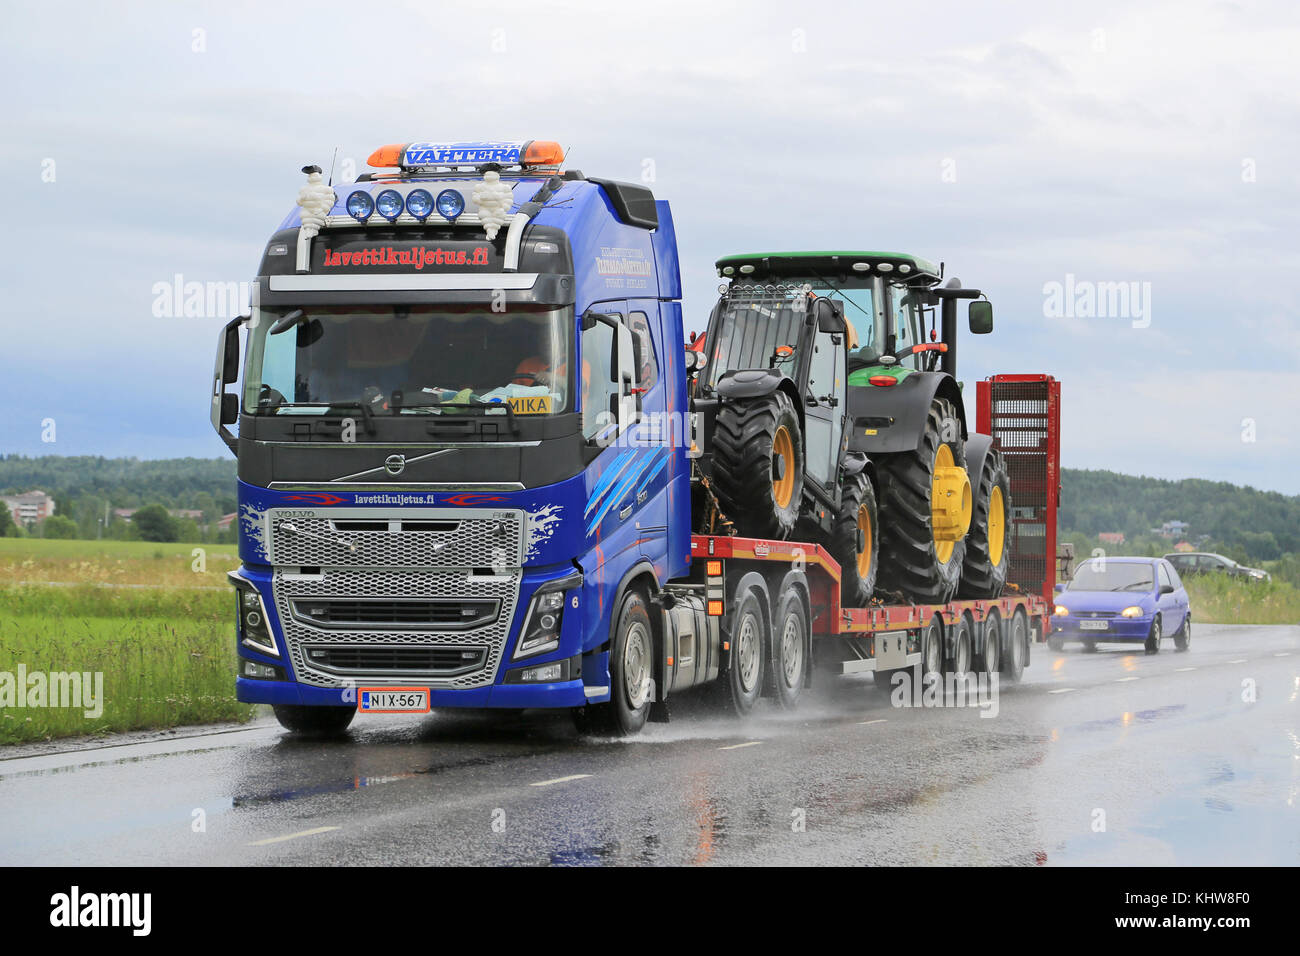 Salo, Finlandia - 10 de julio de 2015: Volvo FH16 lances sobre maquinaria John Deere remolque cuello de cisne. camiones volvo certificar todos los motores diesel para el HVO. Foto de stock